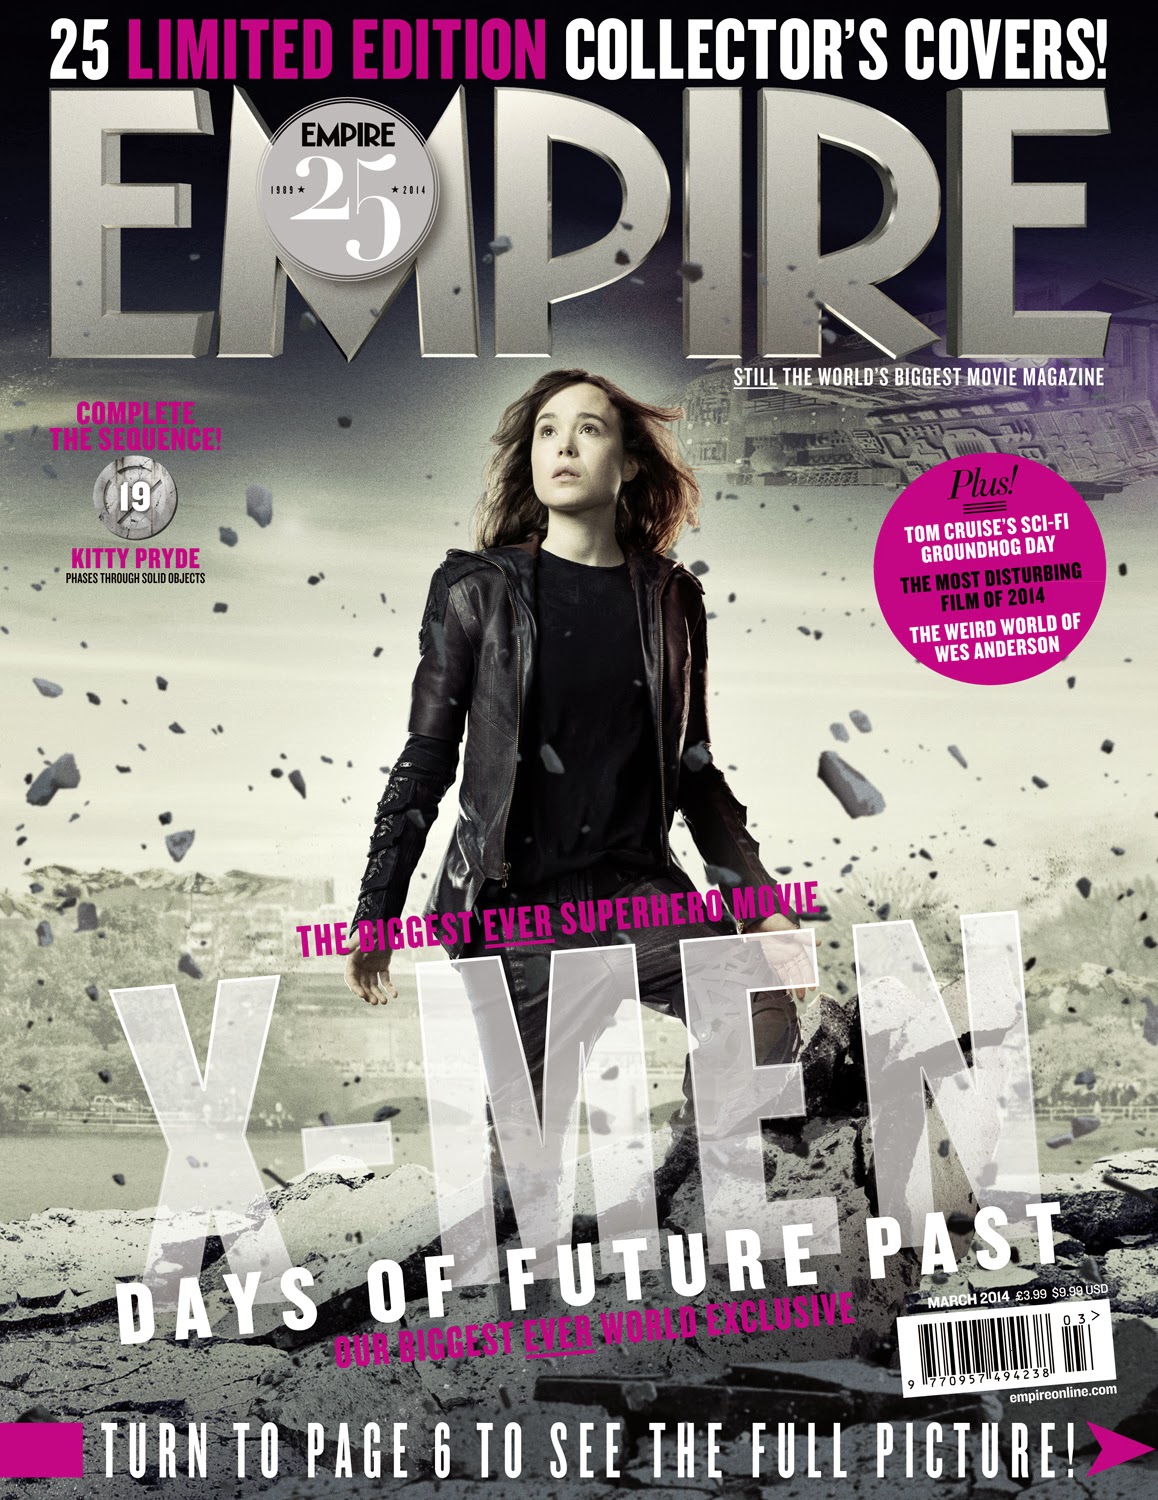 ｃｉａ こちら映画中央情報局です X Men Days Of Future Past シリーズ最新作 X Men デイズ オブ フューチャー パスト が エレン ペイジのキティ プライドをフィーチャーしたエンパイア創刊25周年記念のカバーをリリース